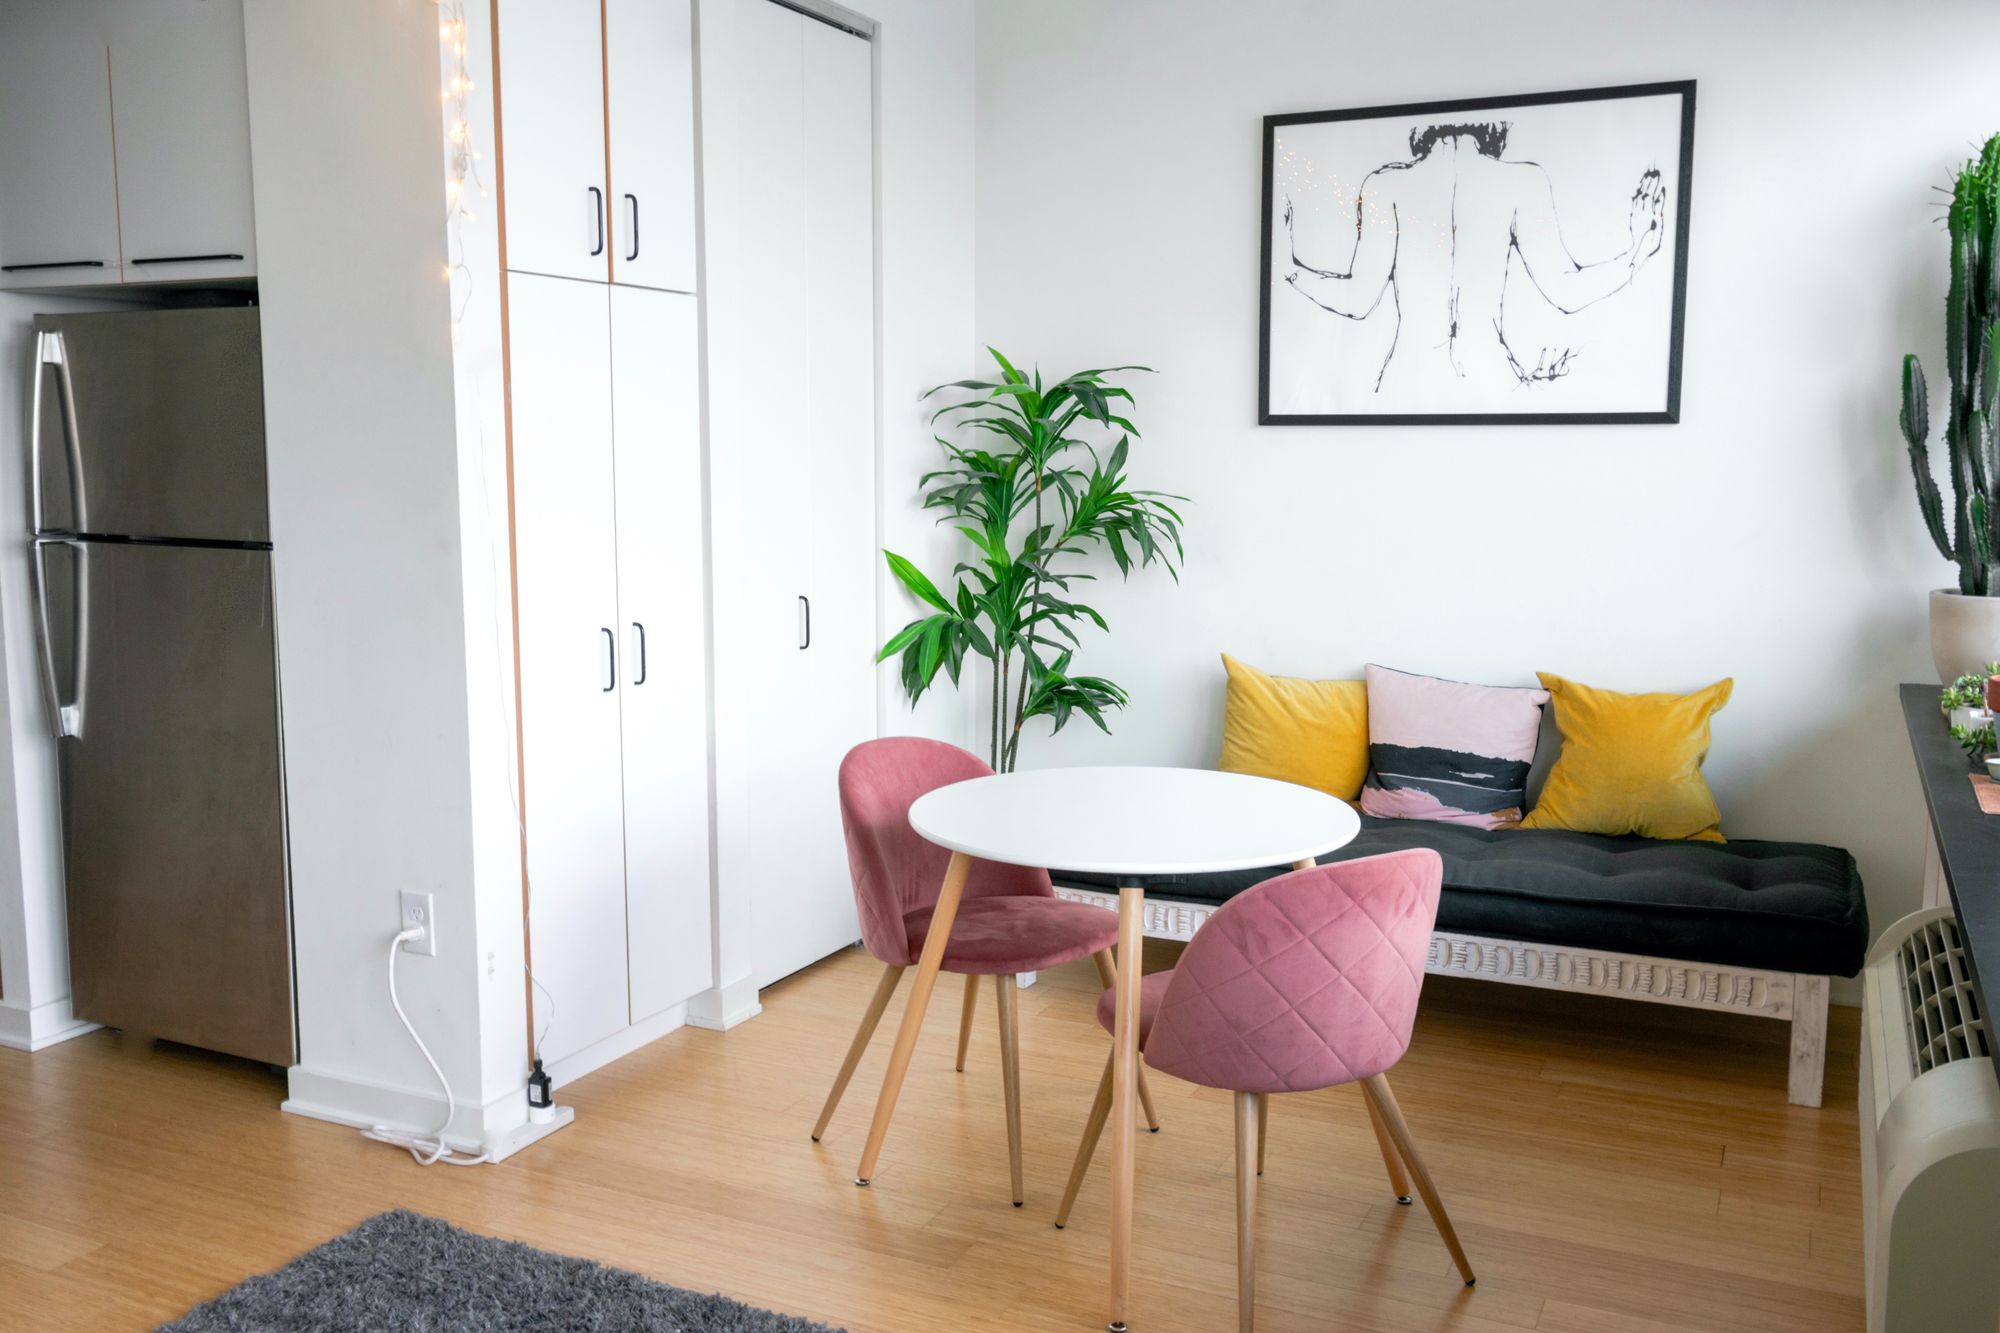 Apartamento Studio. Foto: Andrea Davis no Shutterstock